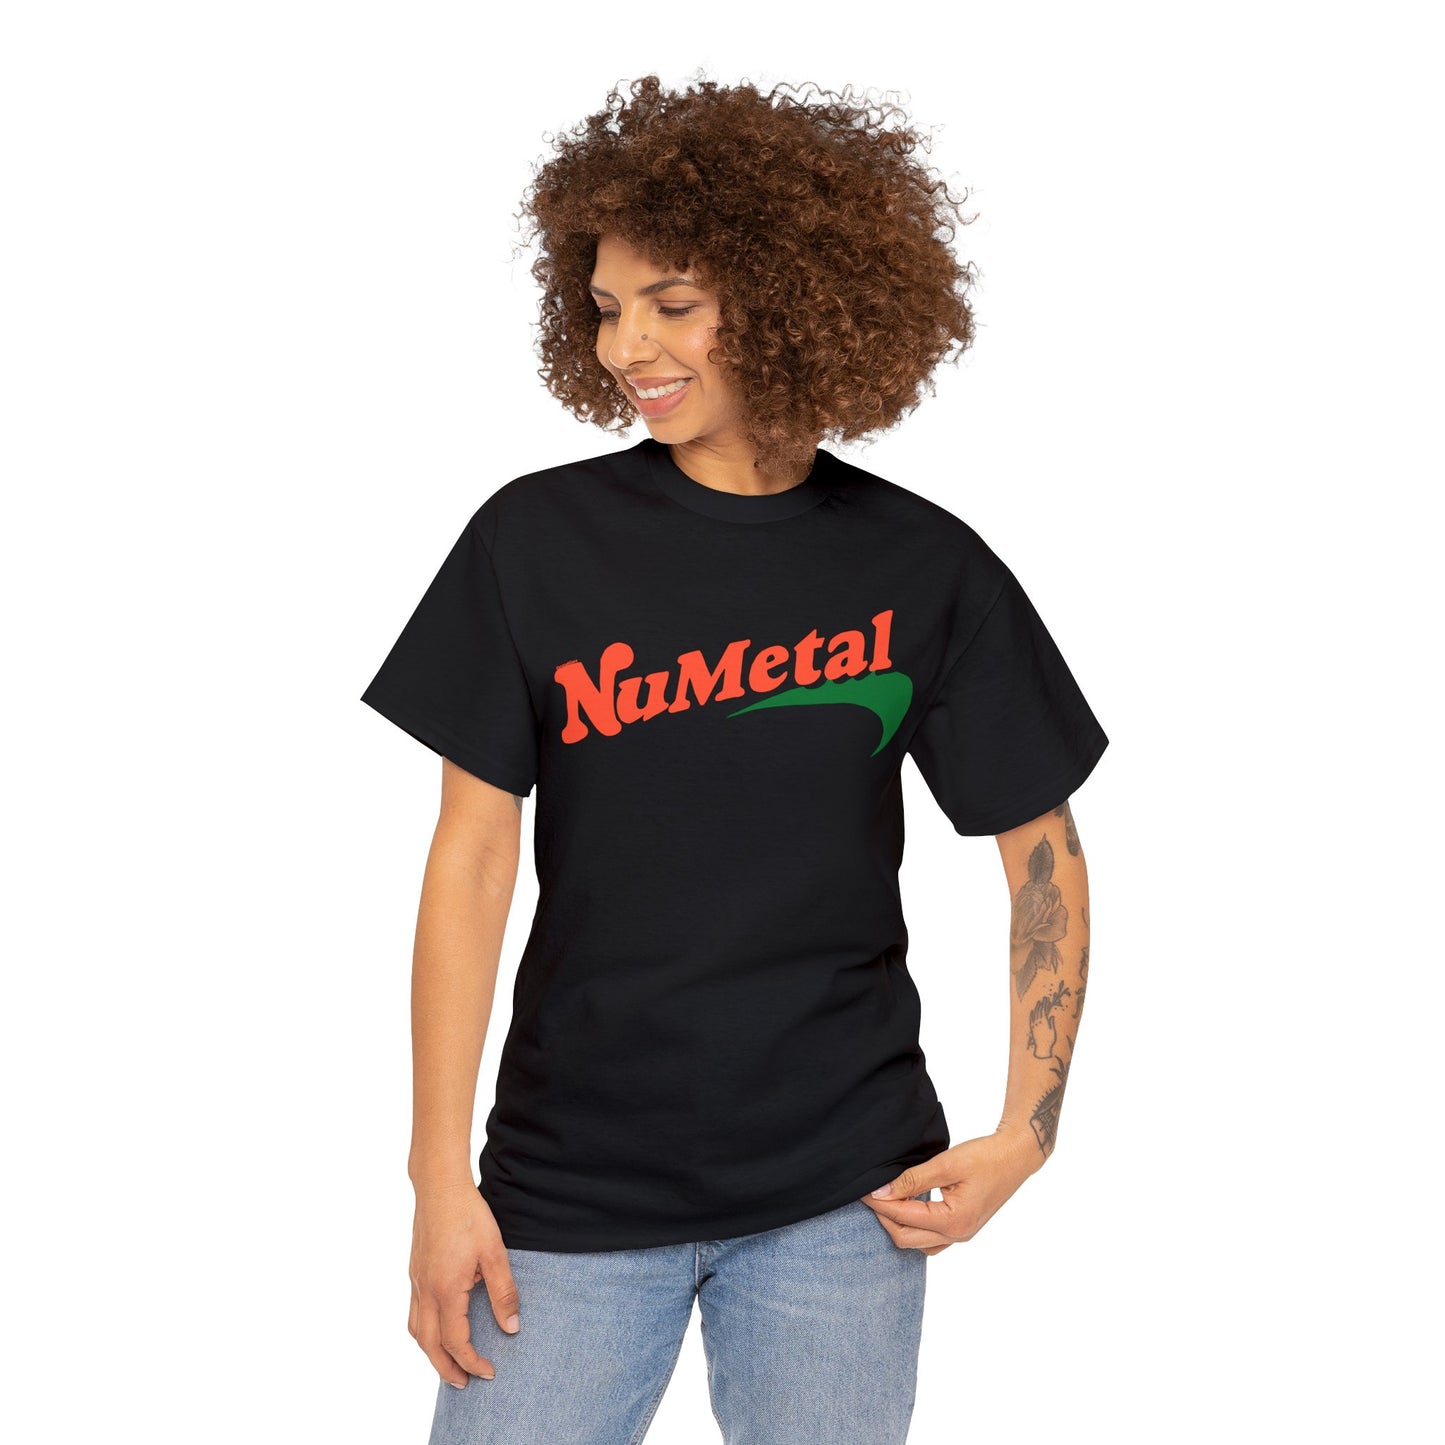 Numetal "Newport" T-shirt